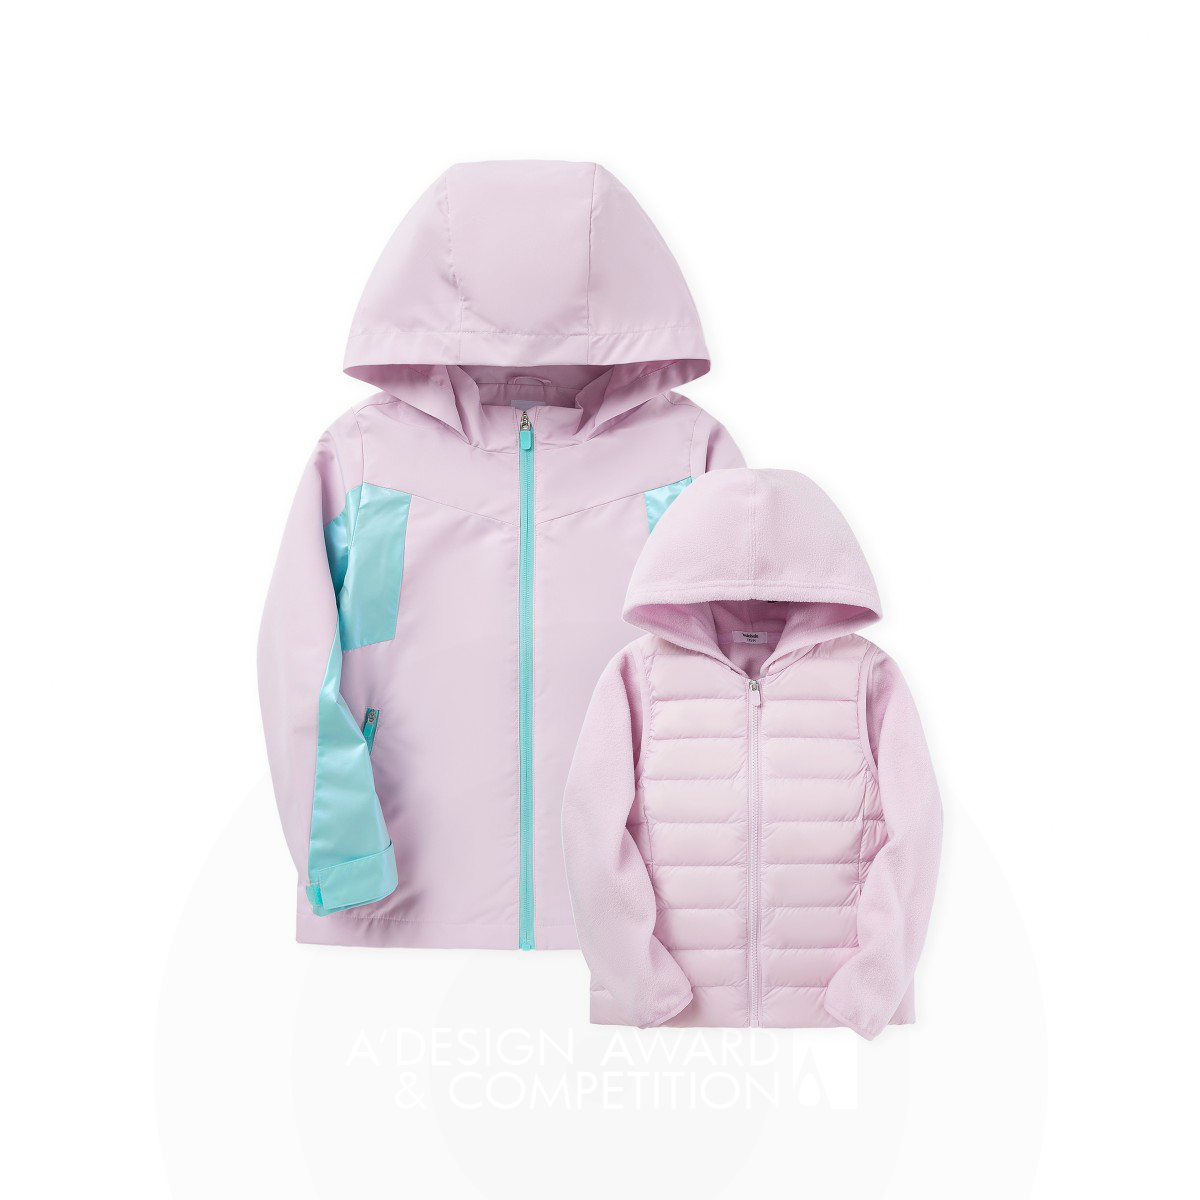 Il futuro dell'abbigliamento per bambini: la giacca 3-in-1 di Yubao Jia e Yaoyao Wang